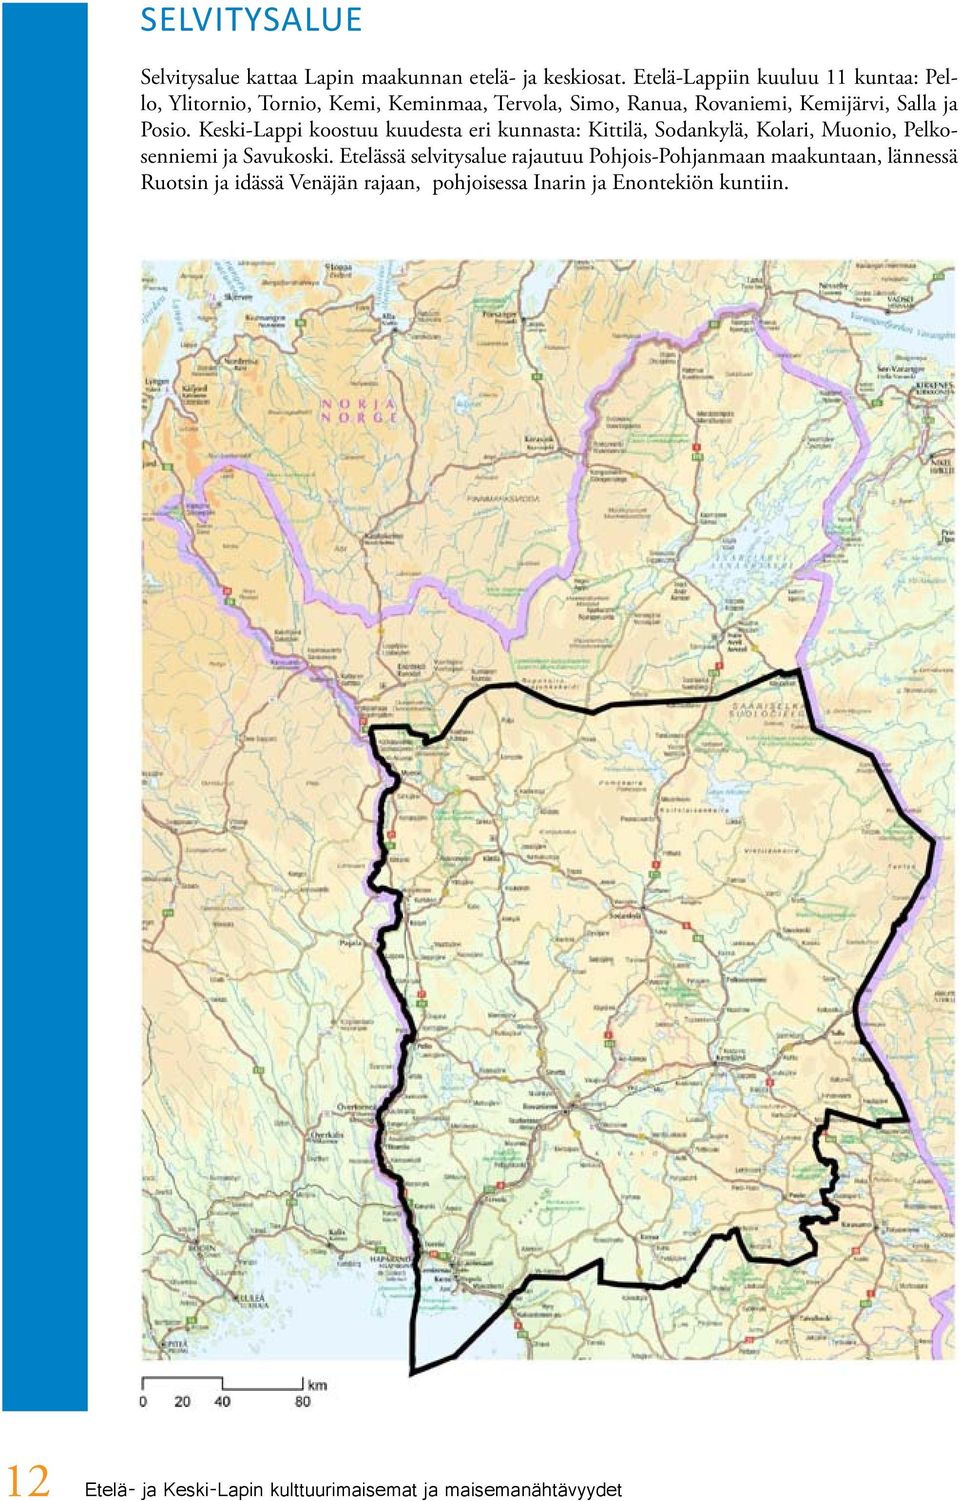 Posio. Keski-Lappi koostuu kuudesta eri kunnasta: Kittilä, Sodankylä, Kolari, Muonio, Pelkosenniemi ja Savukoski.